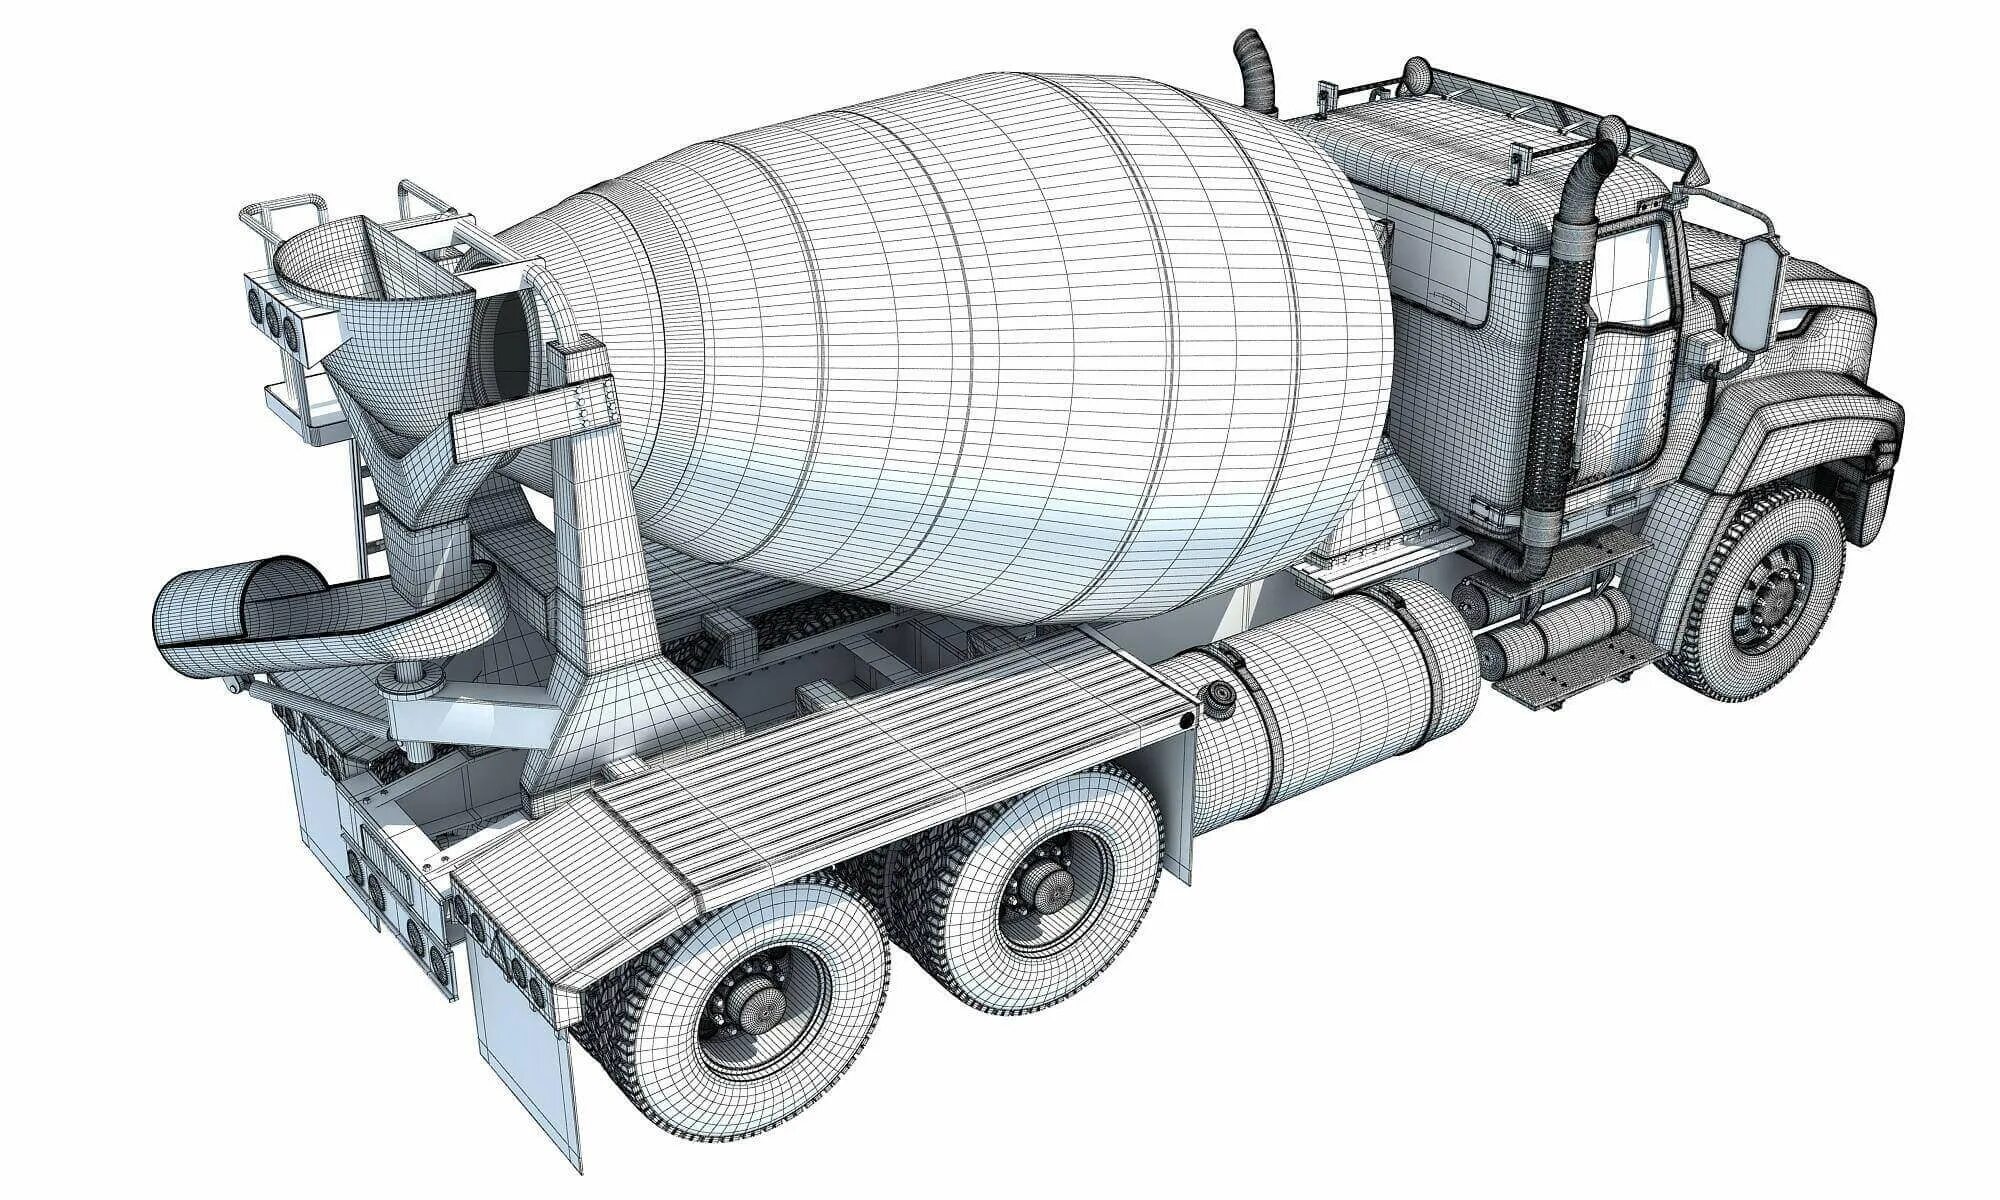 Concrete mixer. Миксер трак бетон. Concrete Mixer Truck 3d. Полуприцеп миксер автобетоносмеситель. Бумажная модель автобетоносмеситель.